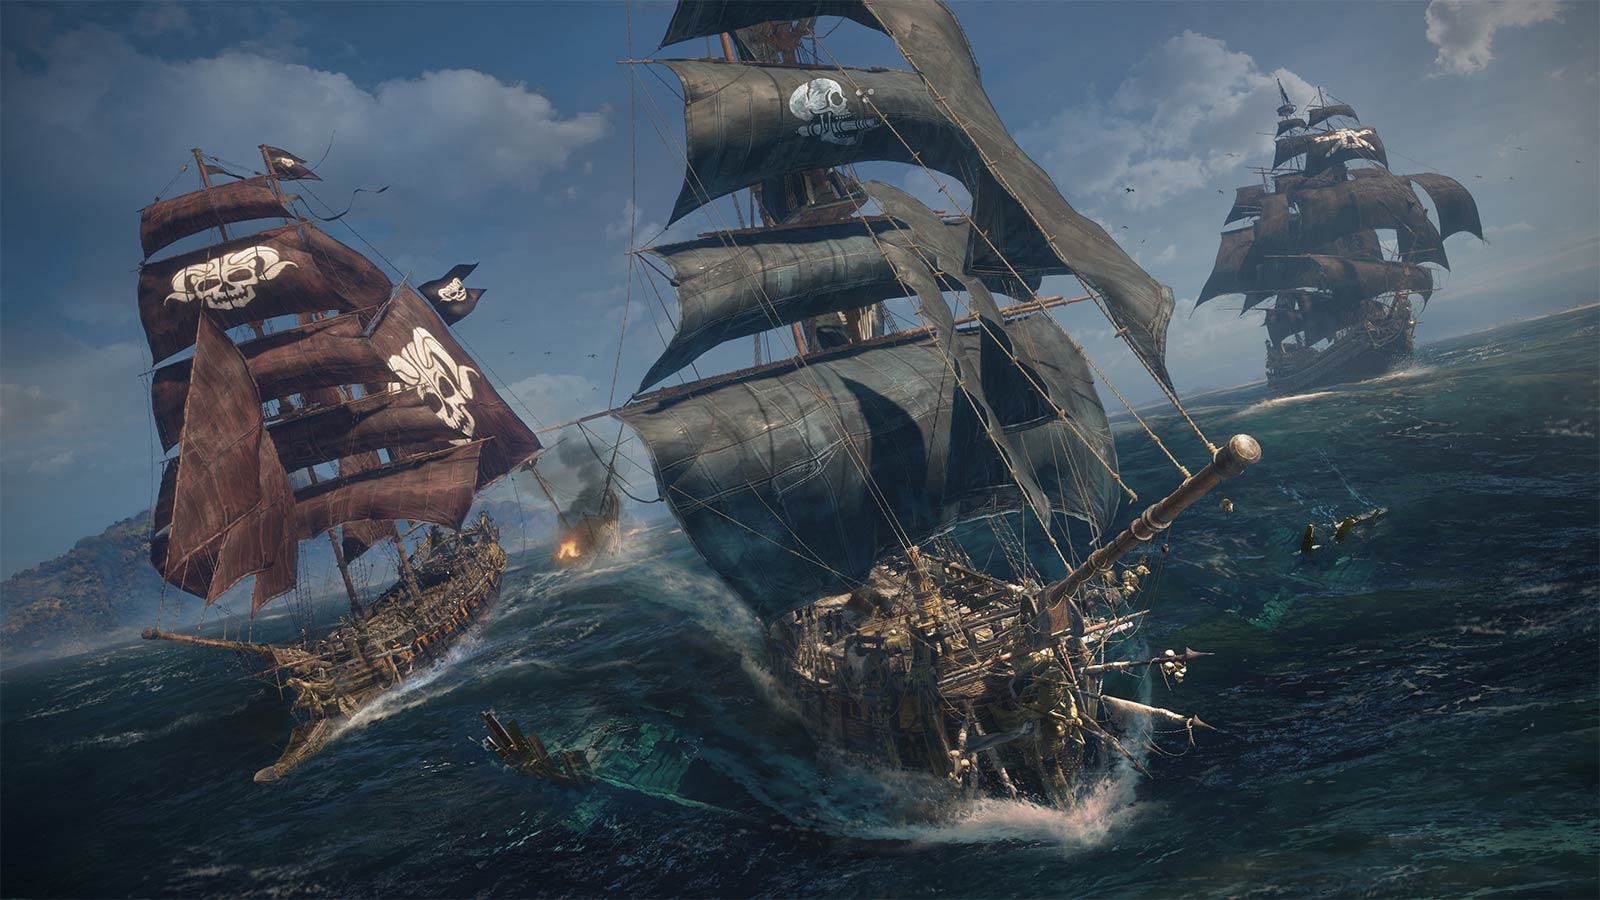 Skull and Bones, le jeu de piraterie multijoueurs d'Ubisoft, aurait été rebooté